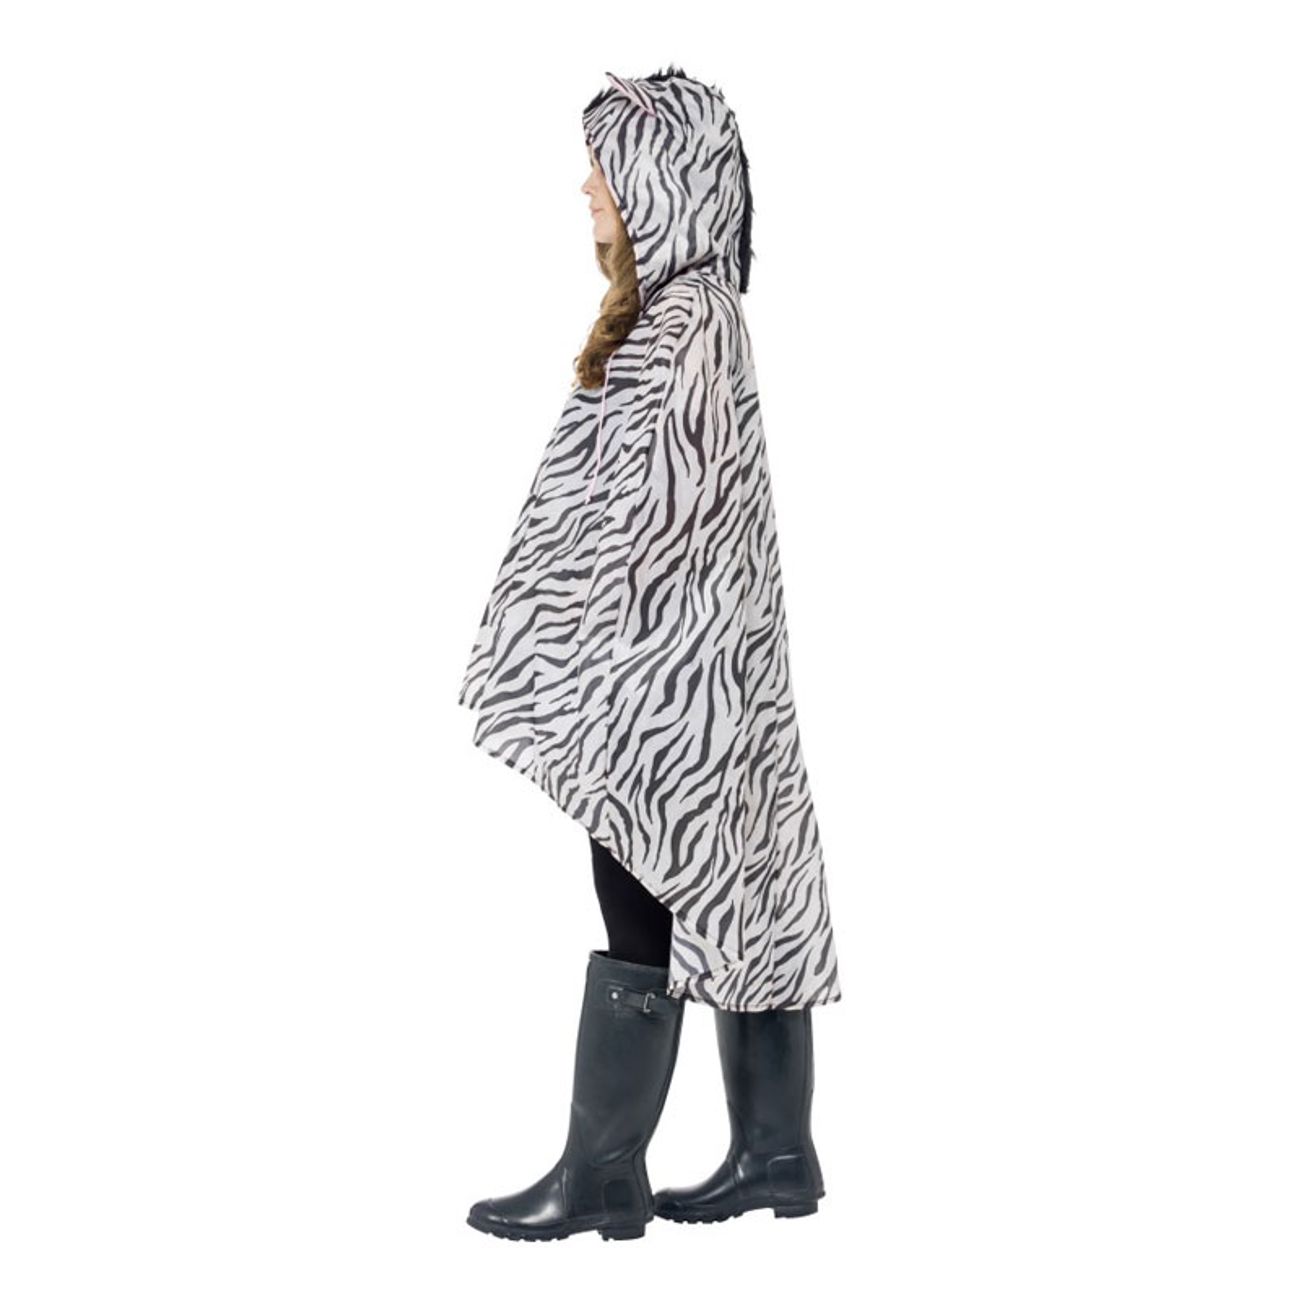 zebra-regnponcho-2